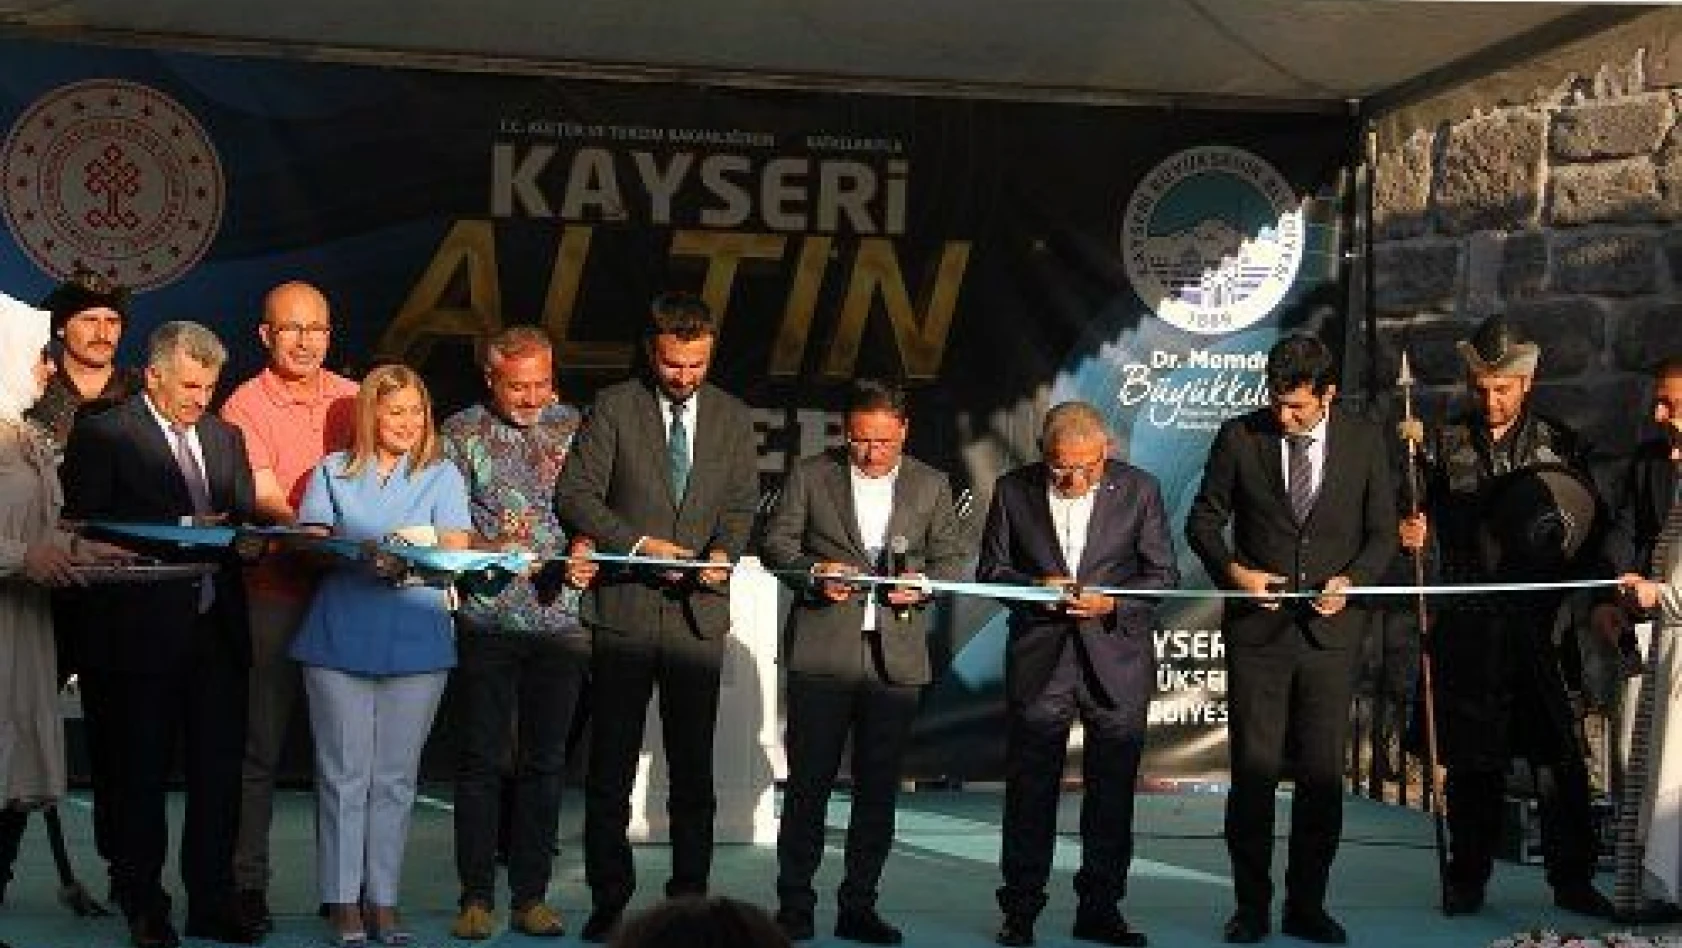 Kayseri Altın Eller Geleneksel El Sanatları Festivali başladı